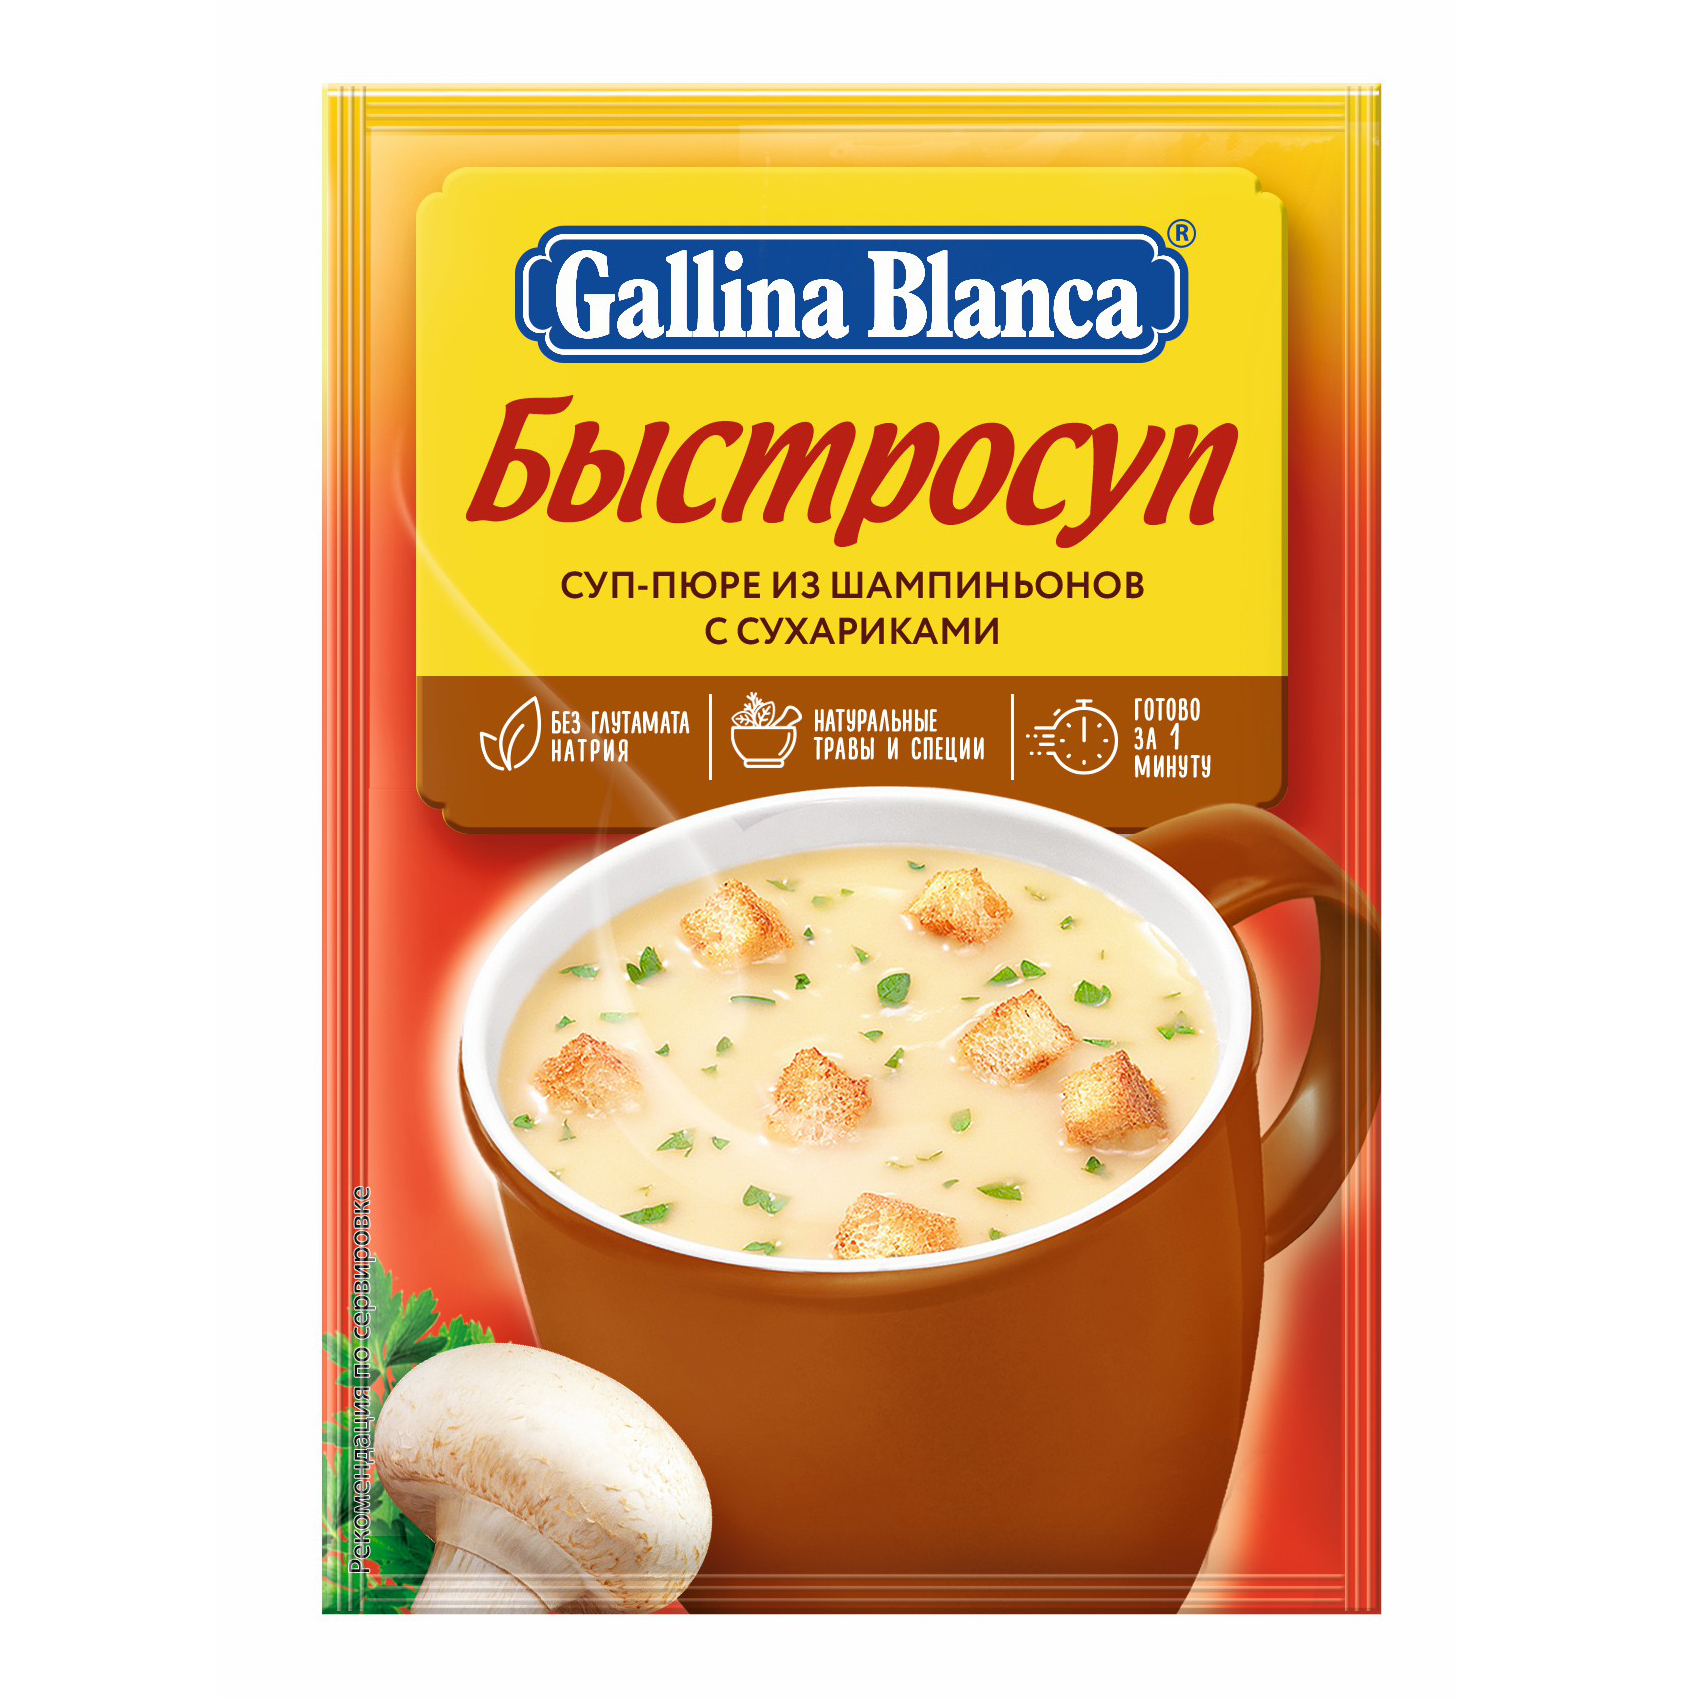 Суп-пюре Gallina Blanca из шампиньонов с сухариками 17 г